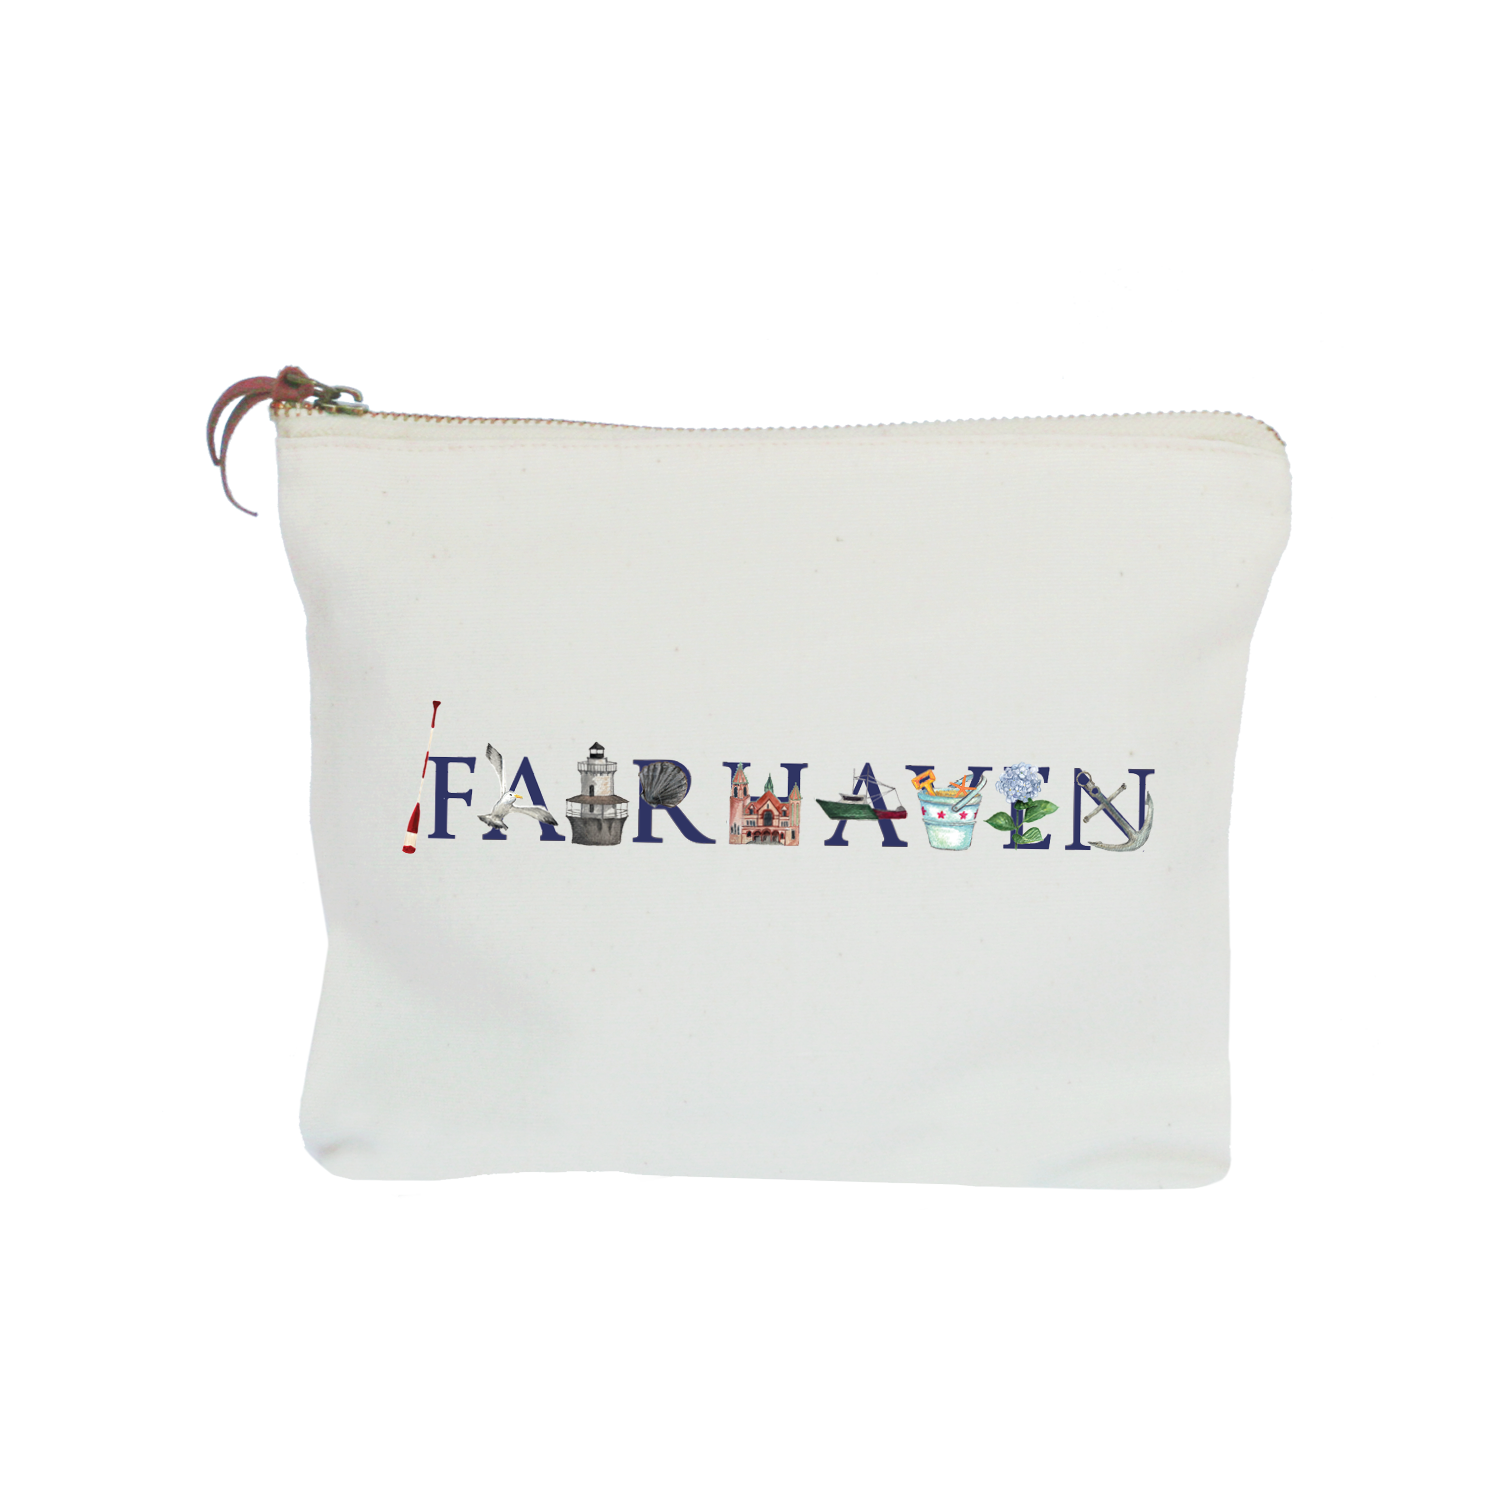 fairhaven zipper pouch